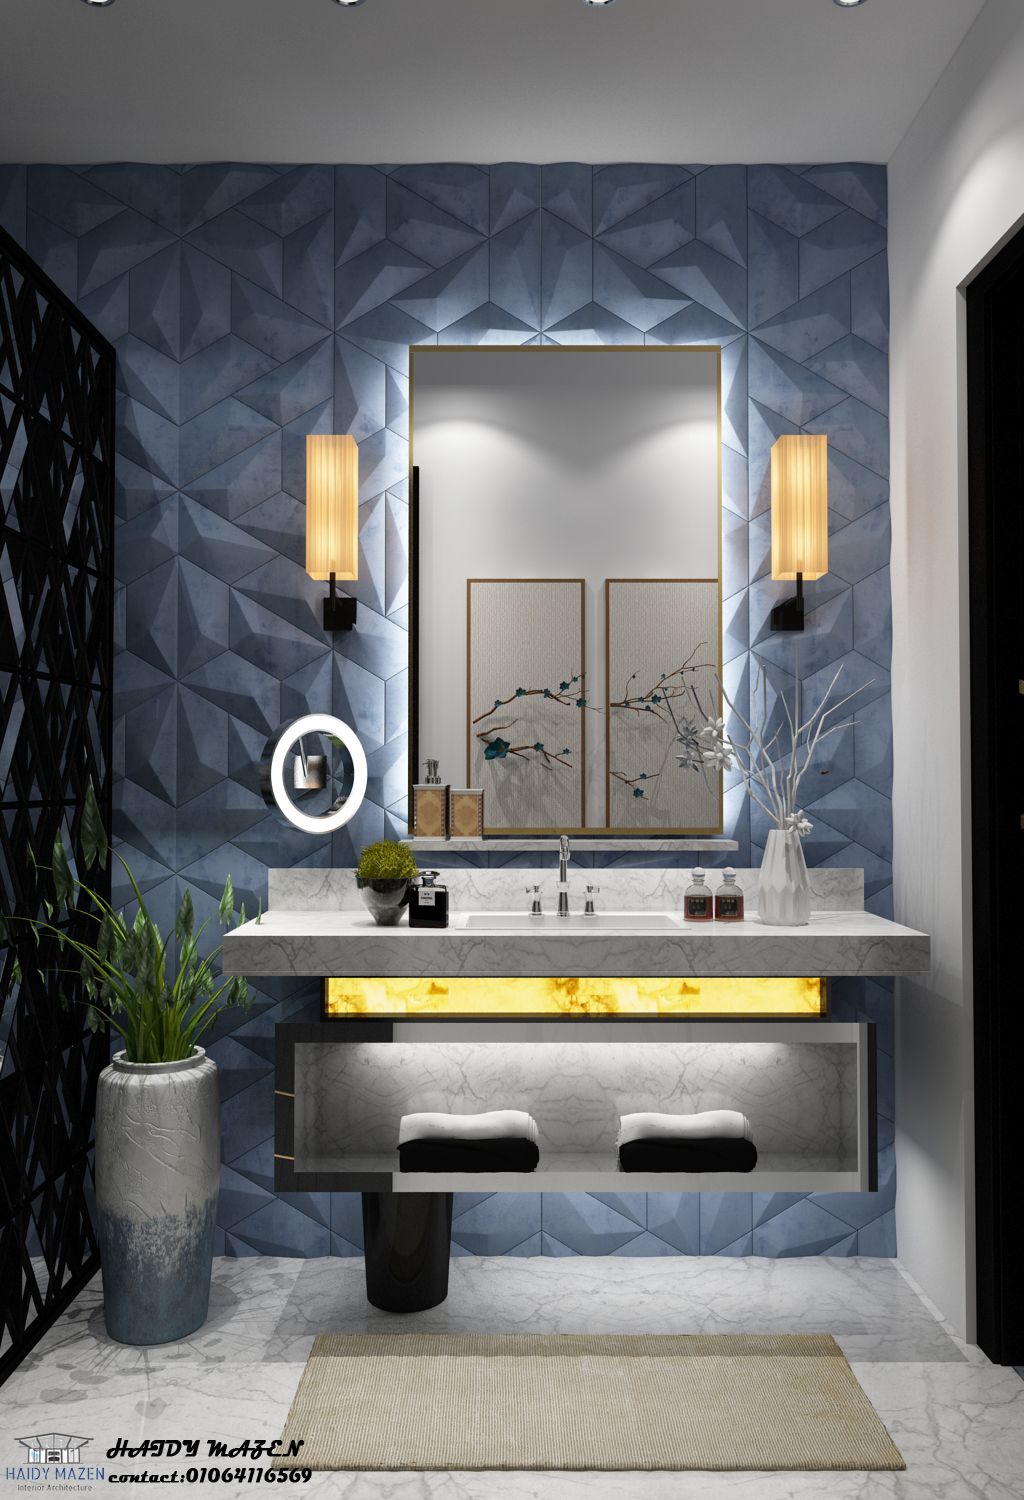 Artistic Bathroom Interior Design